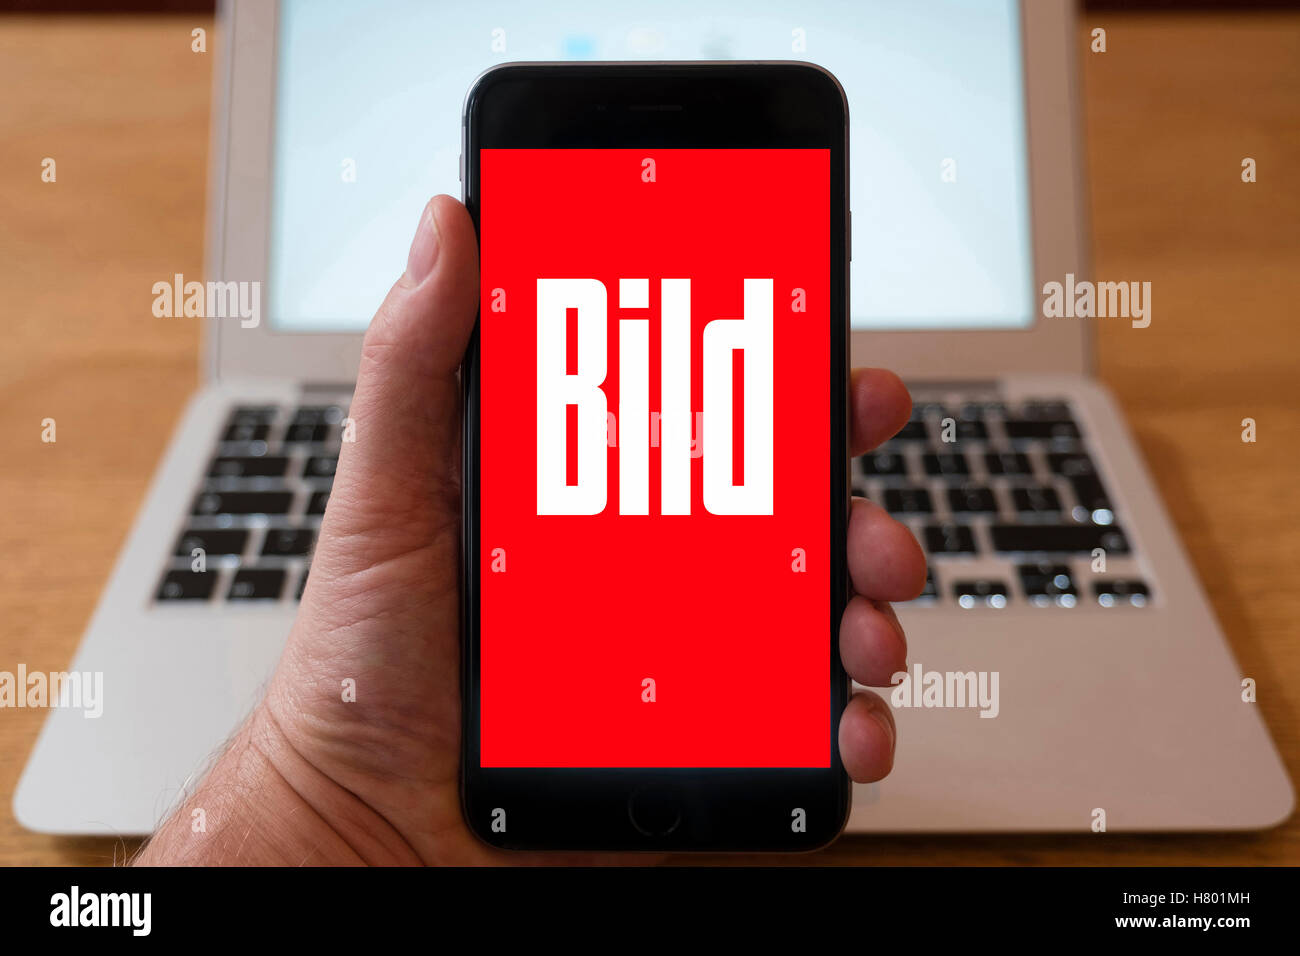 Usando el iPhone Smartphone para mostrar el logotipo de la revista sensacionalista alemán Bild Foto de stock